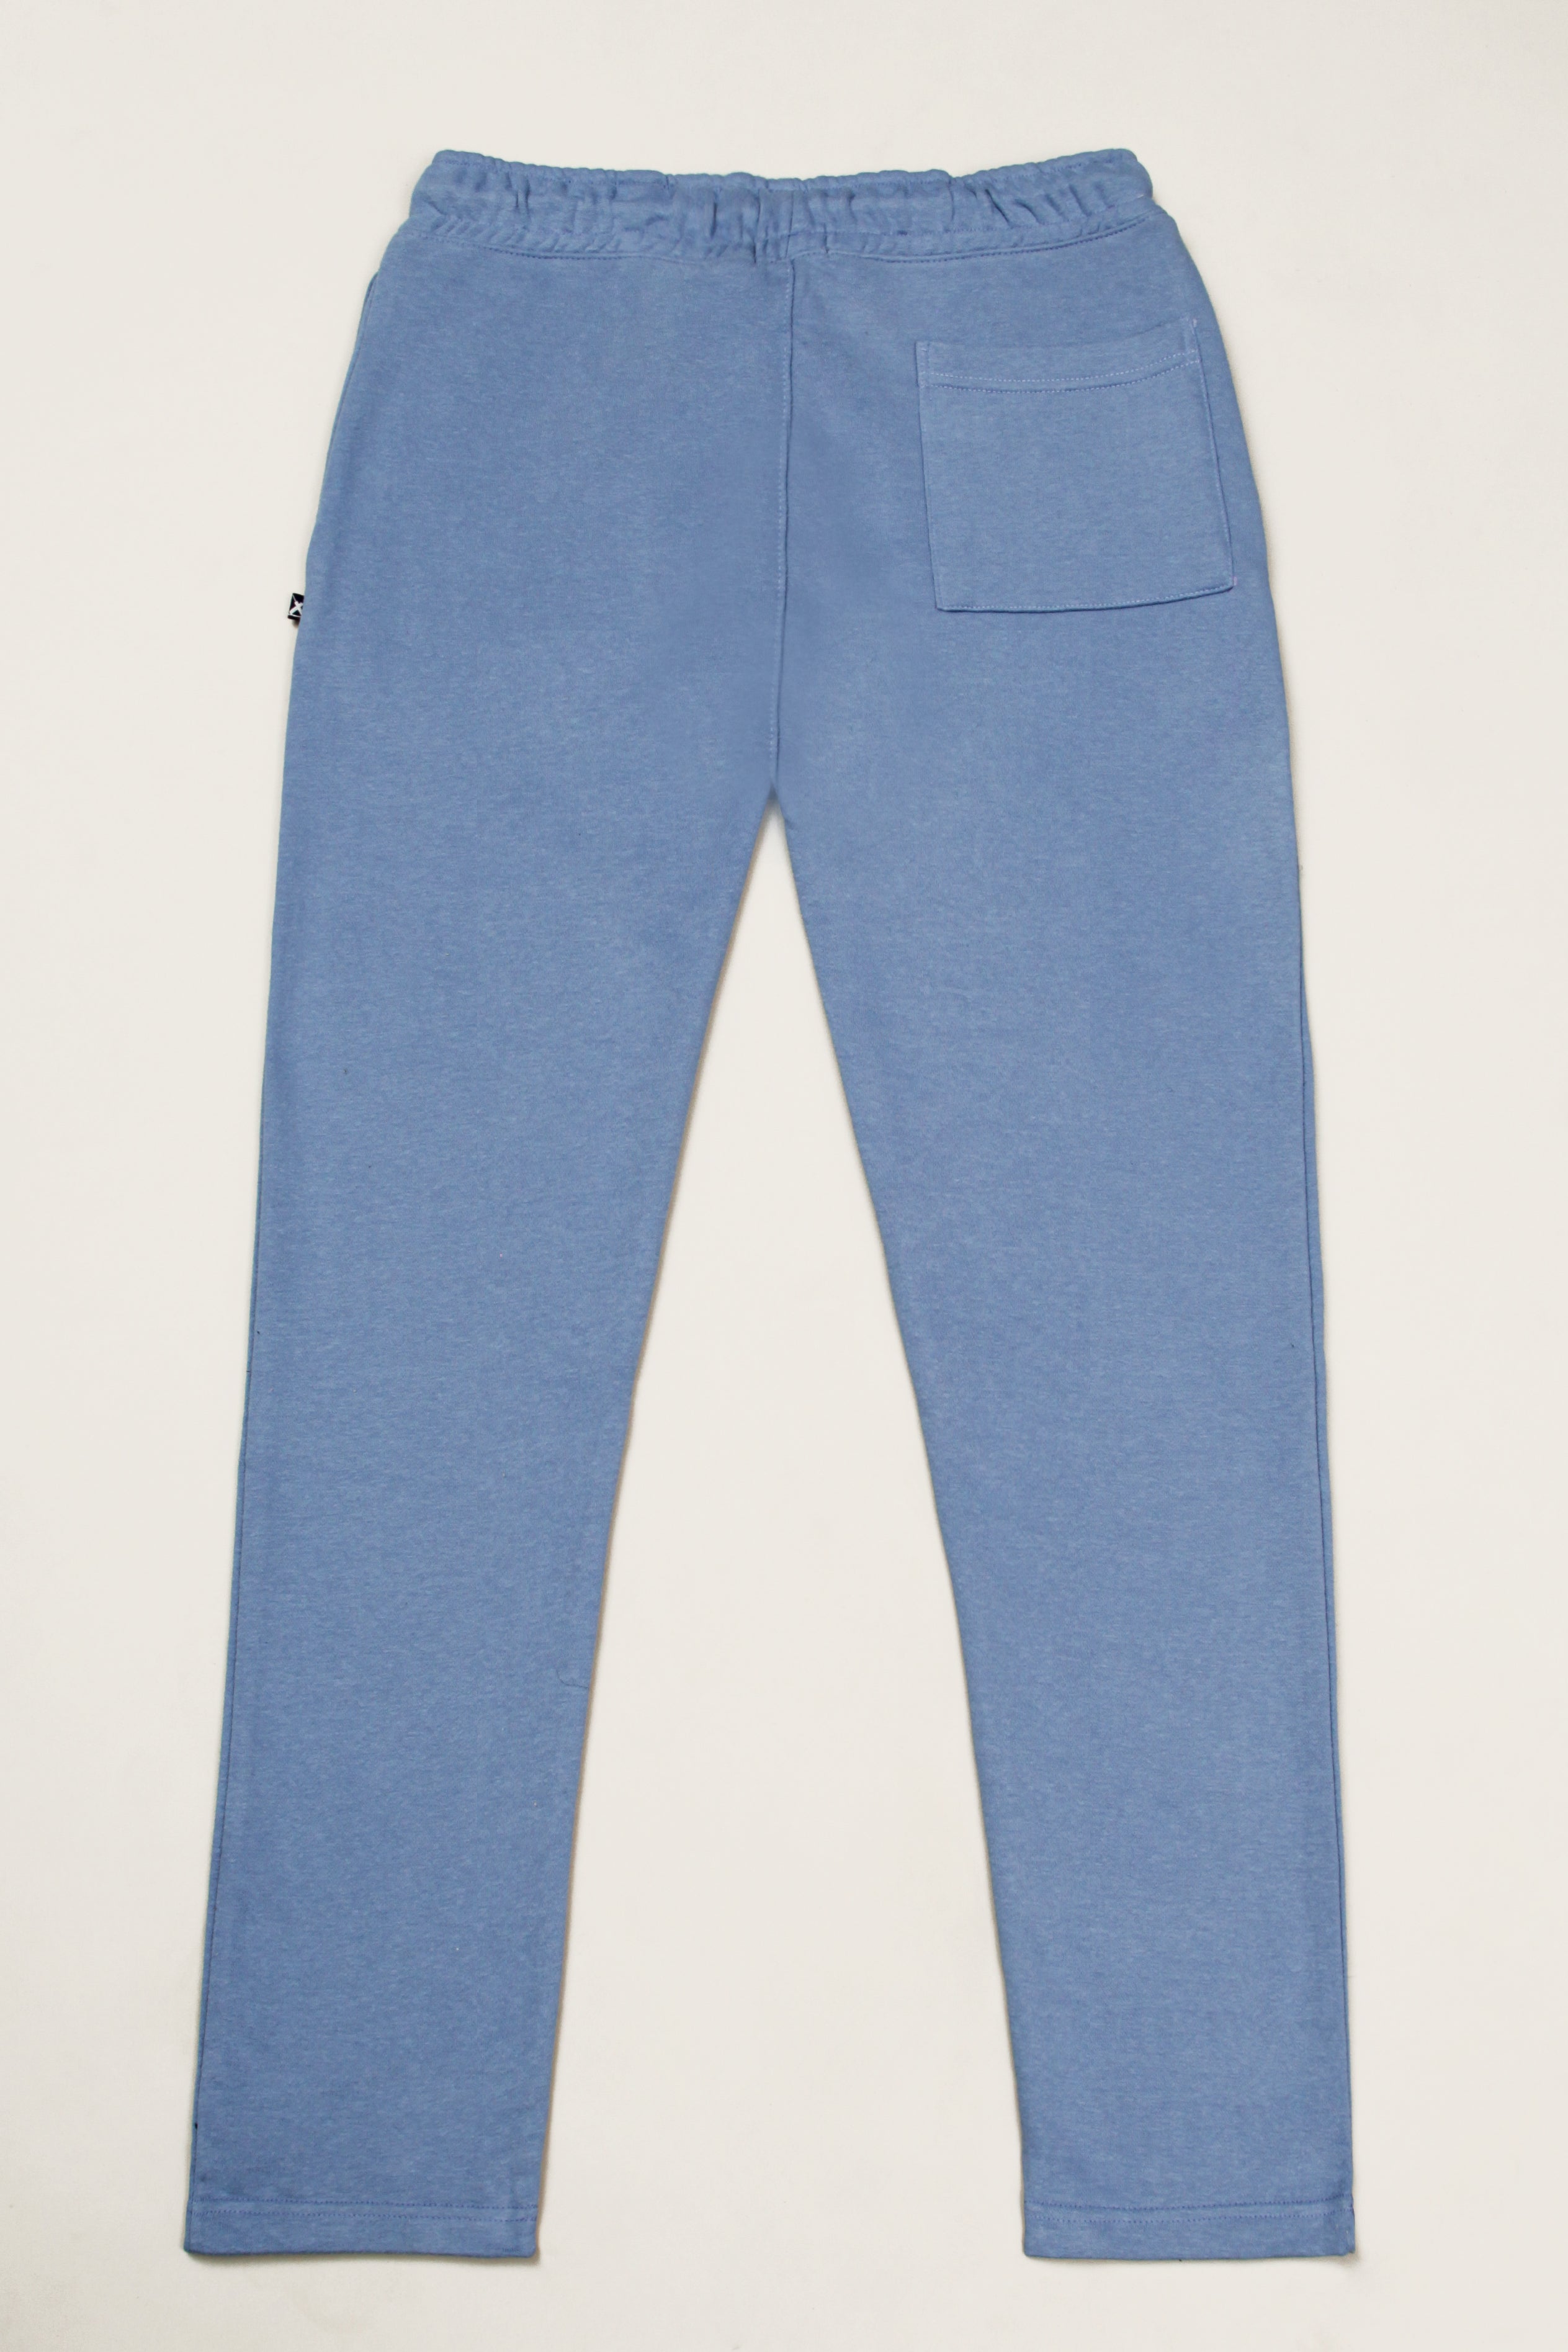 Men's Blue Graphic Trouser